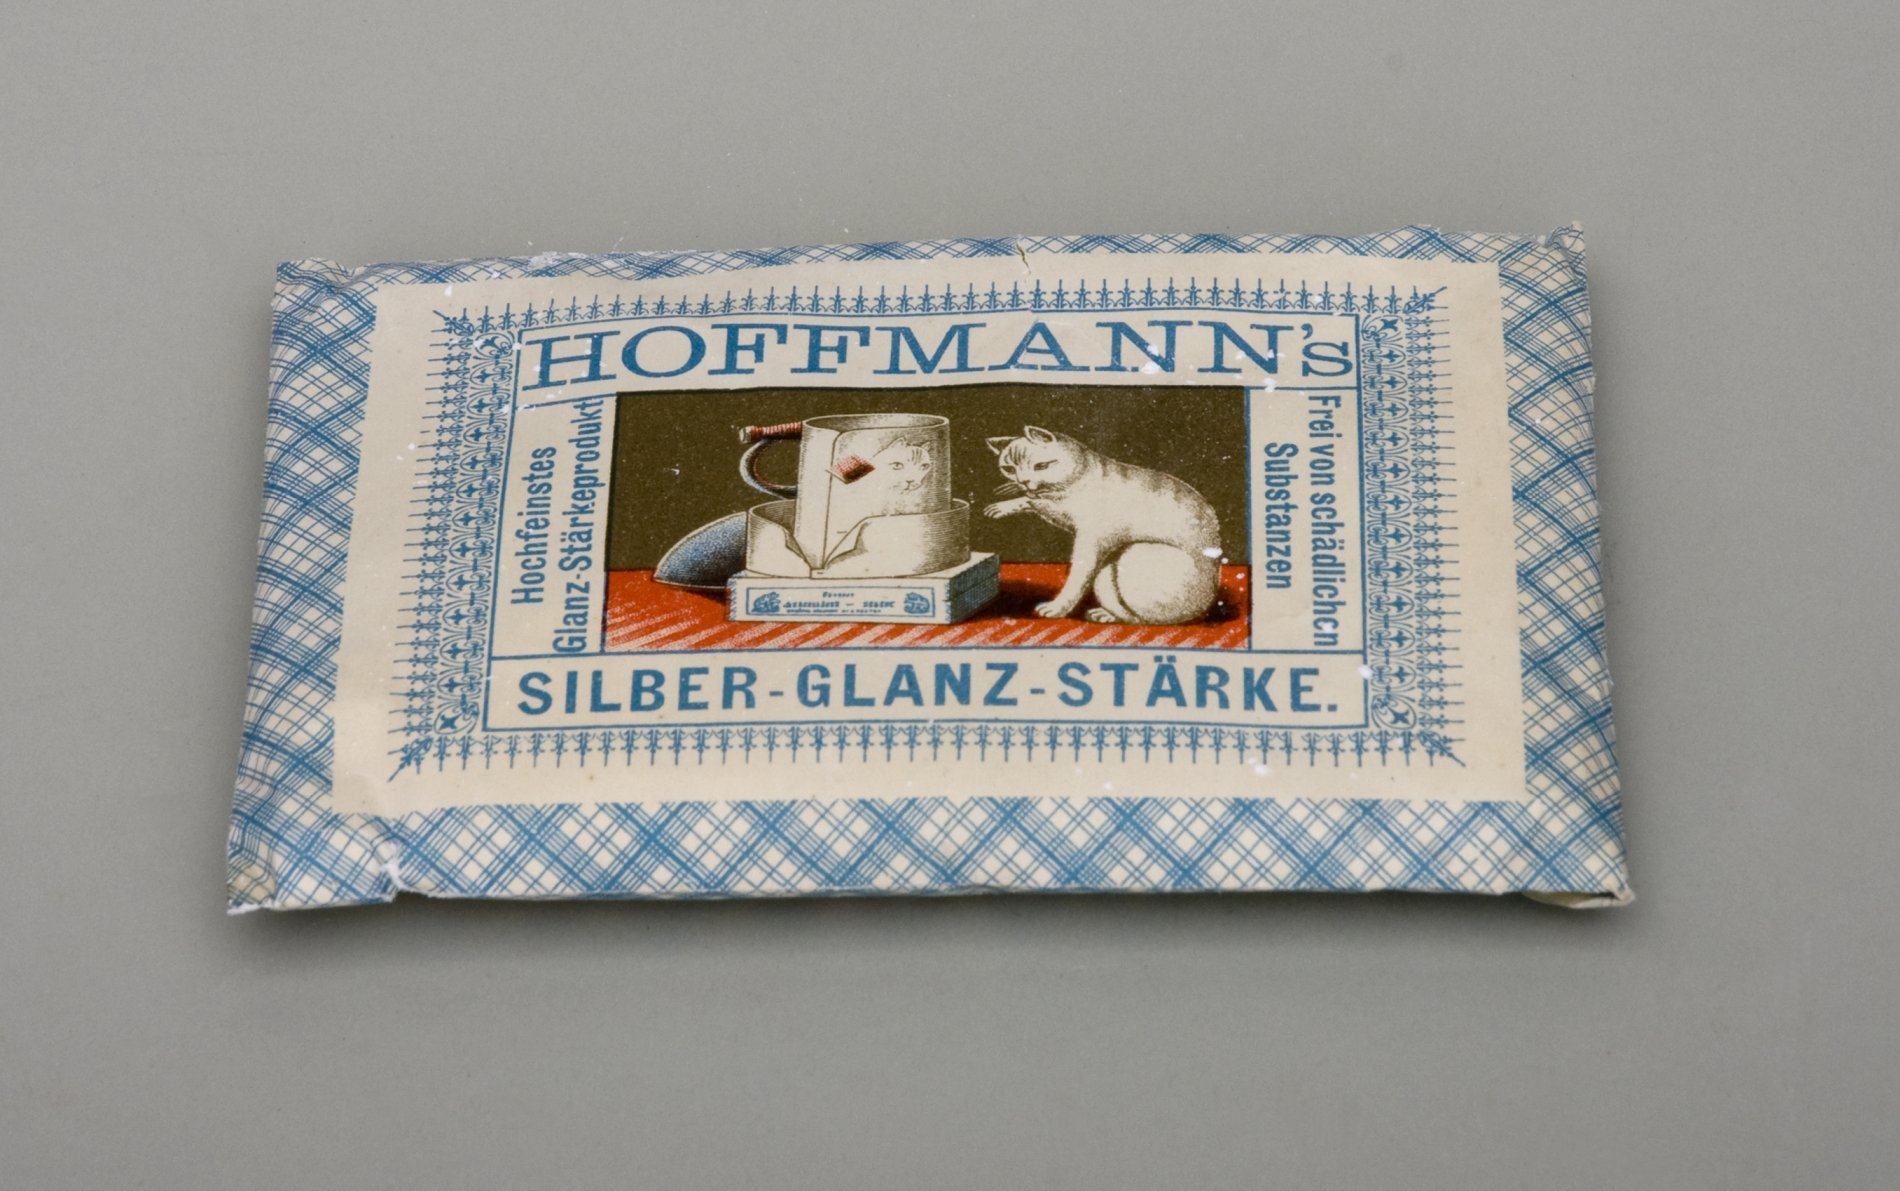 Packung "Hoffmann's Silber-Glanz-Stärke" (Stiftung Domäne Dahlem - Landgut und Museum, Weiternutzung nur mit Genehmigung des Museums CC BY-NC-SA)